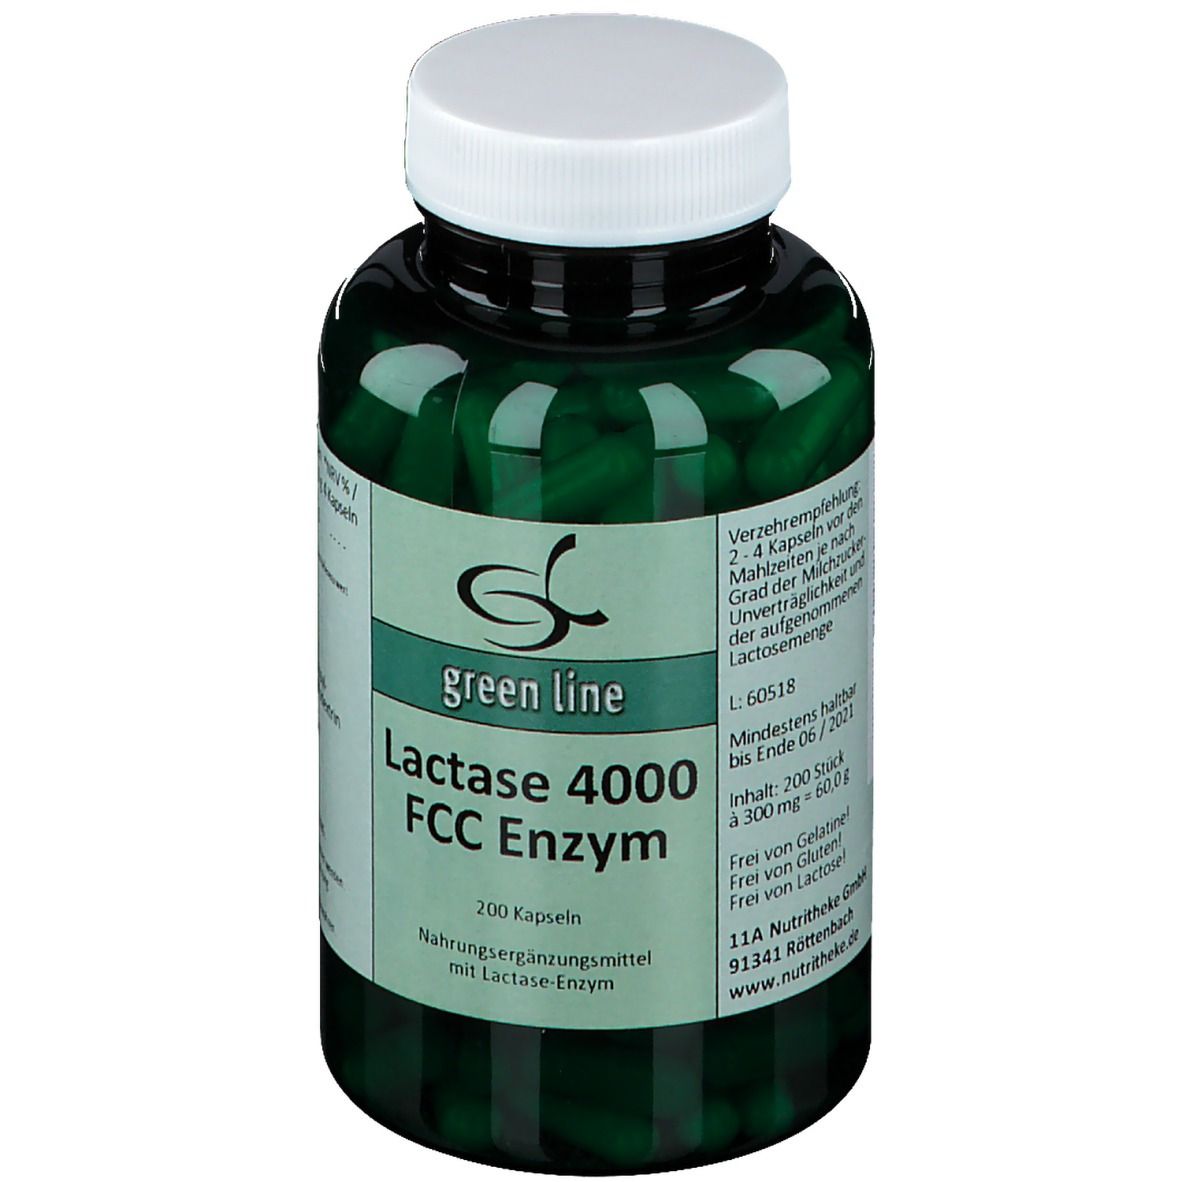 Lactase 4000 FCC Enzym